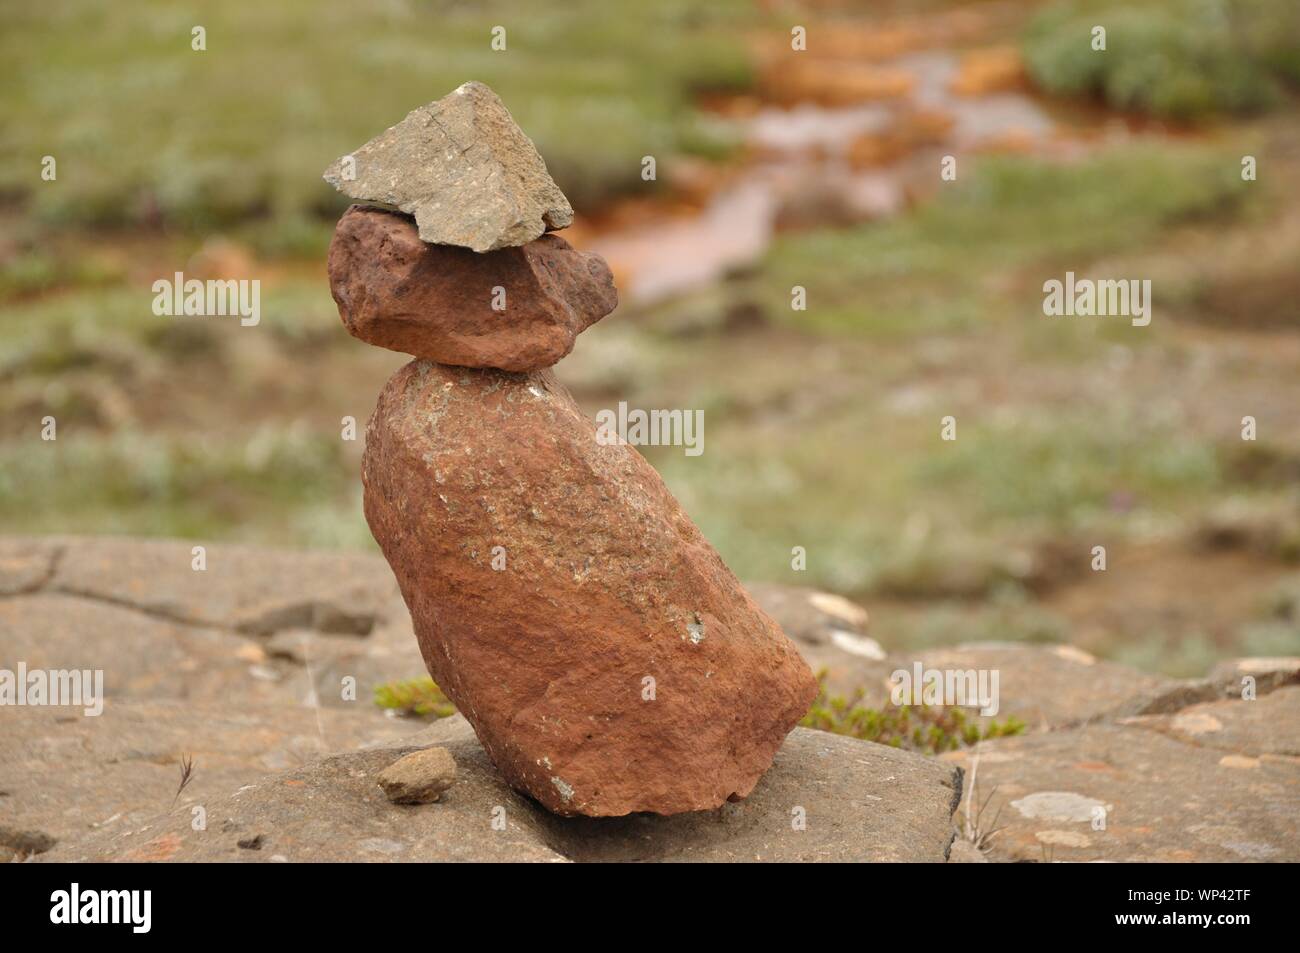 Am Gullfoss von Menschen gebaute kleine Steinfiguren. Foto Stock